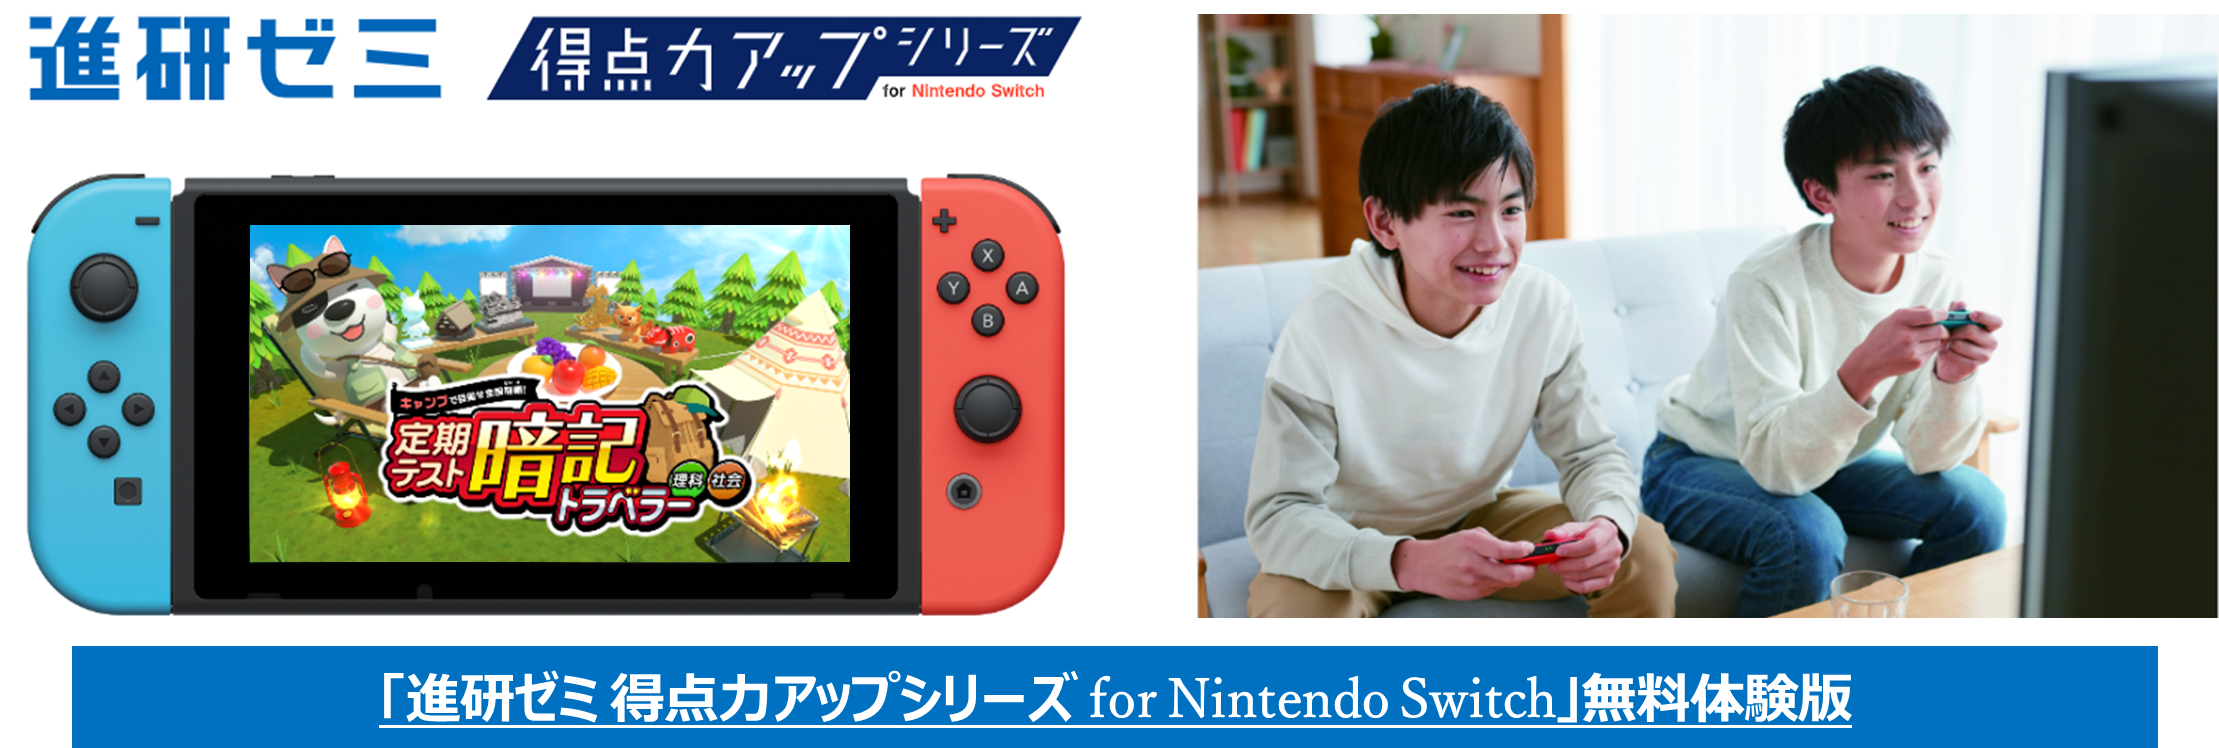 ベネッセ、Nintendo Switchを使って学ぶ教材の無料体験版を公開 4月